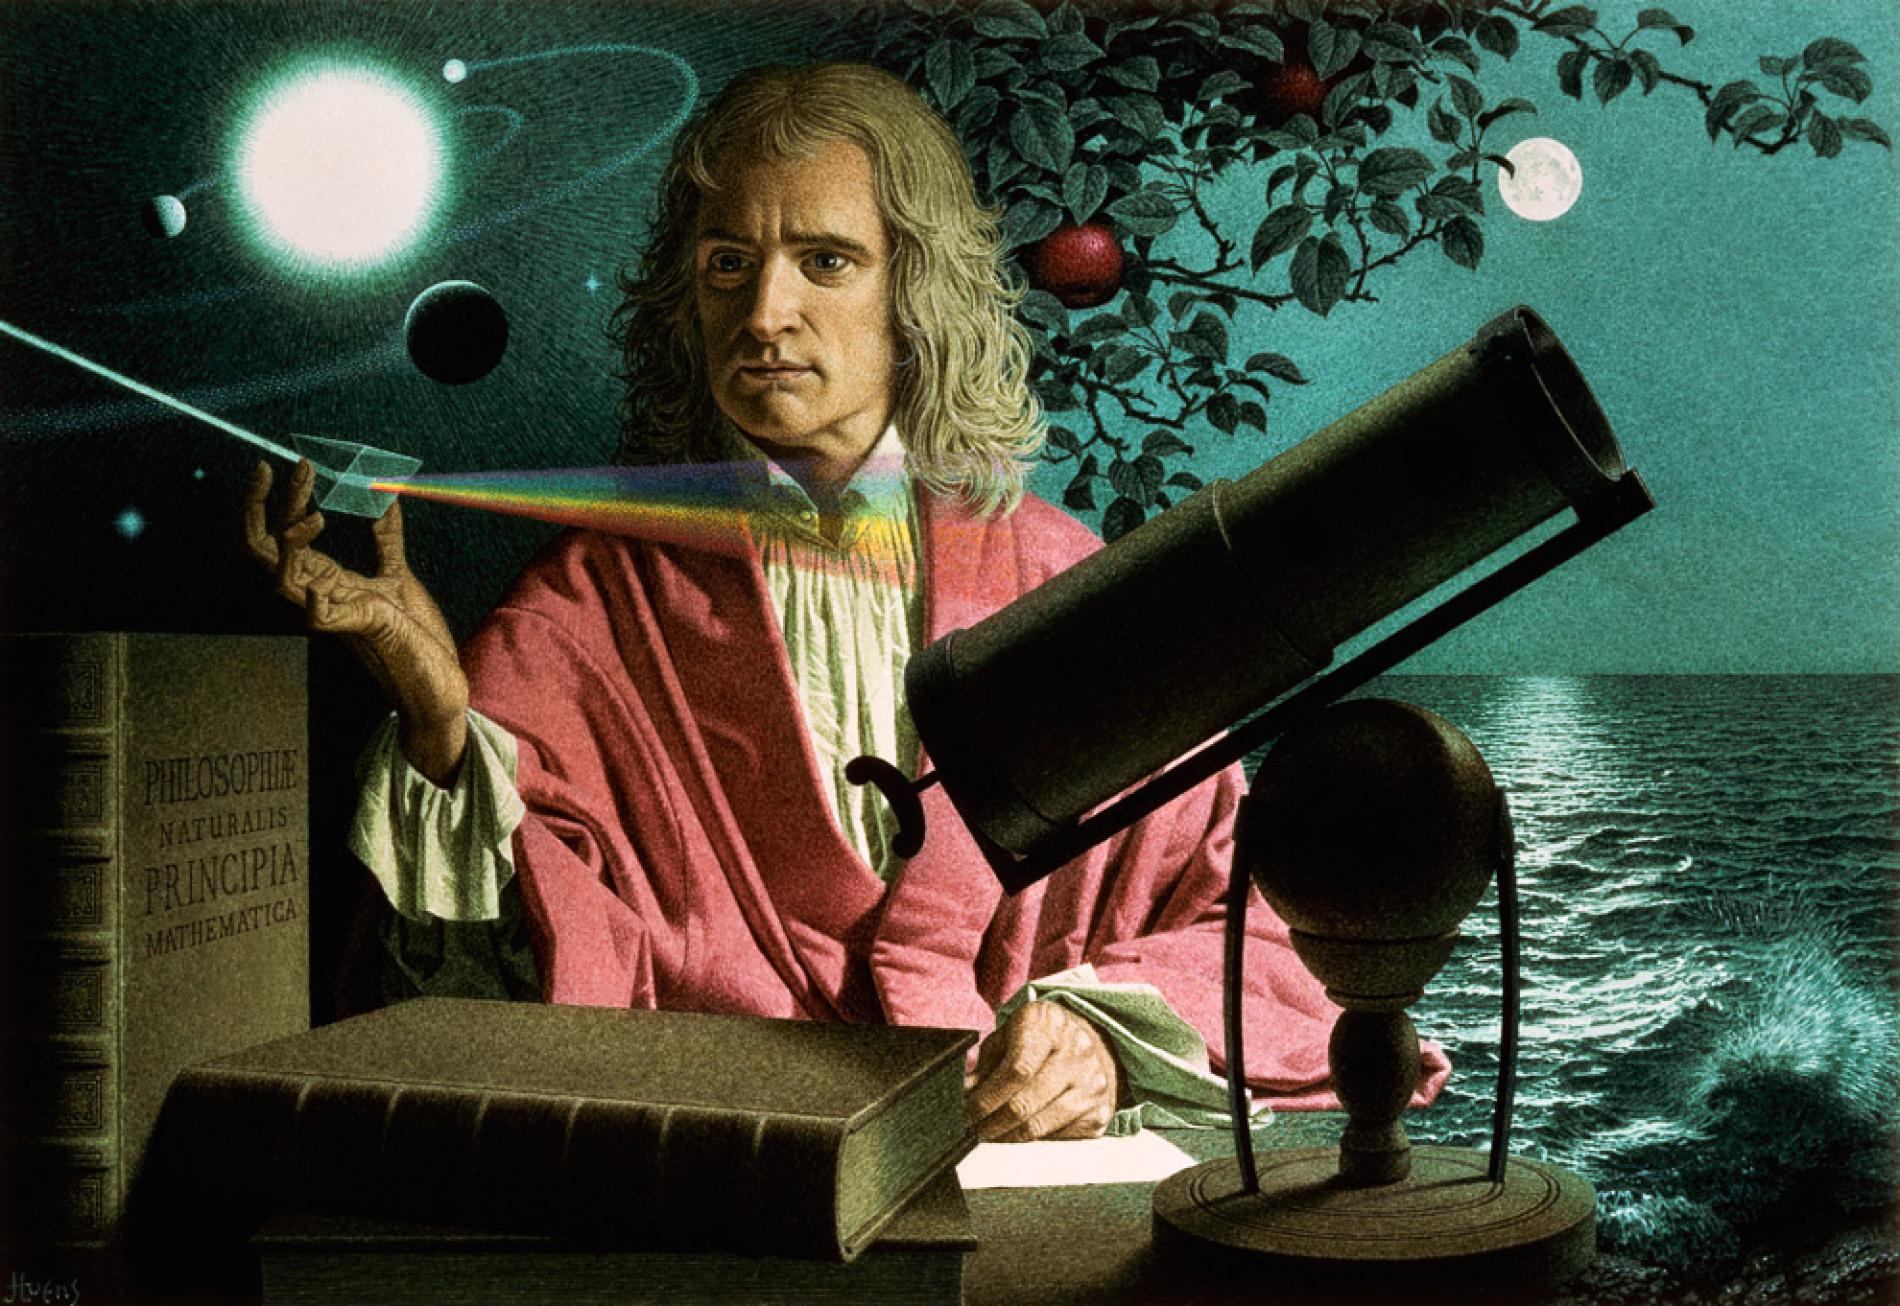 उथलपुथलले भरिपूर्णमहान वैज्ञानिक न्यूटनको जीवनी :